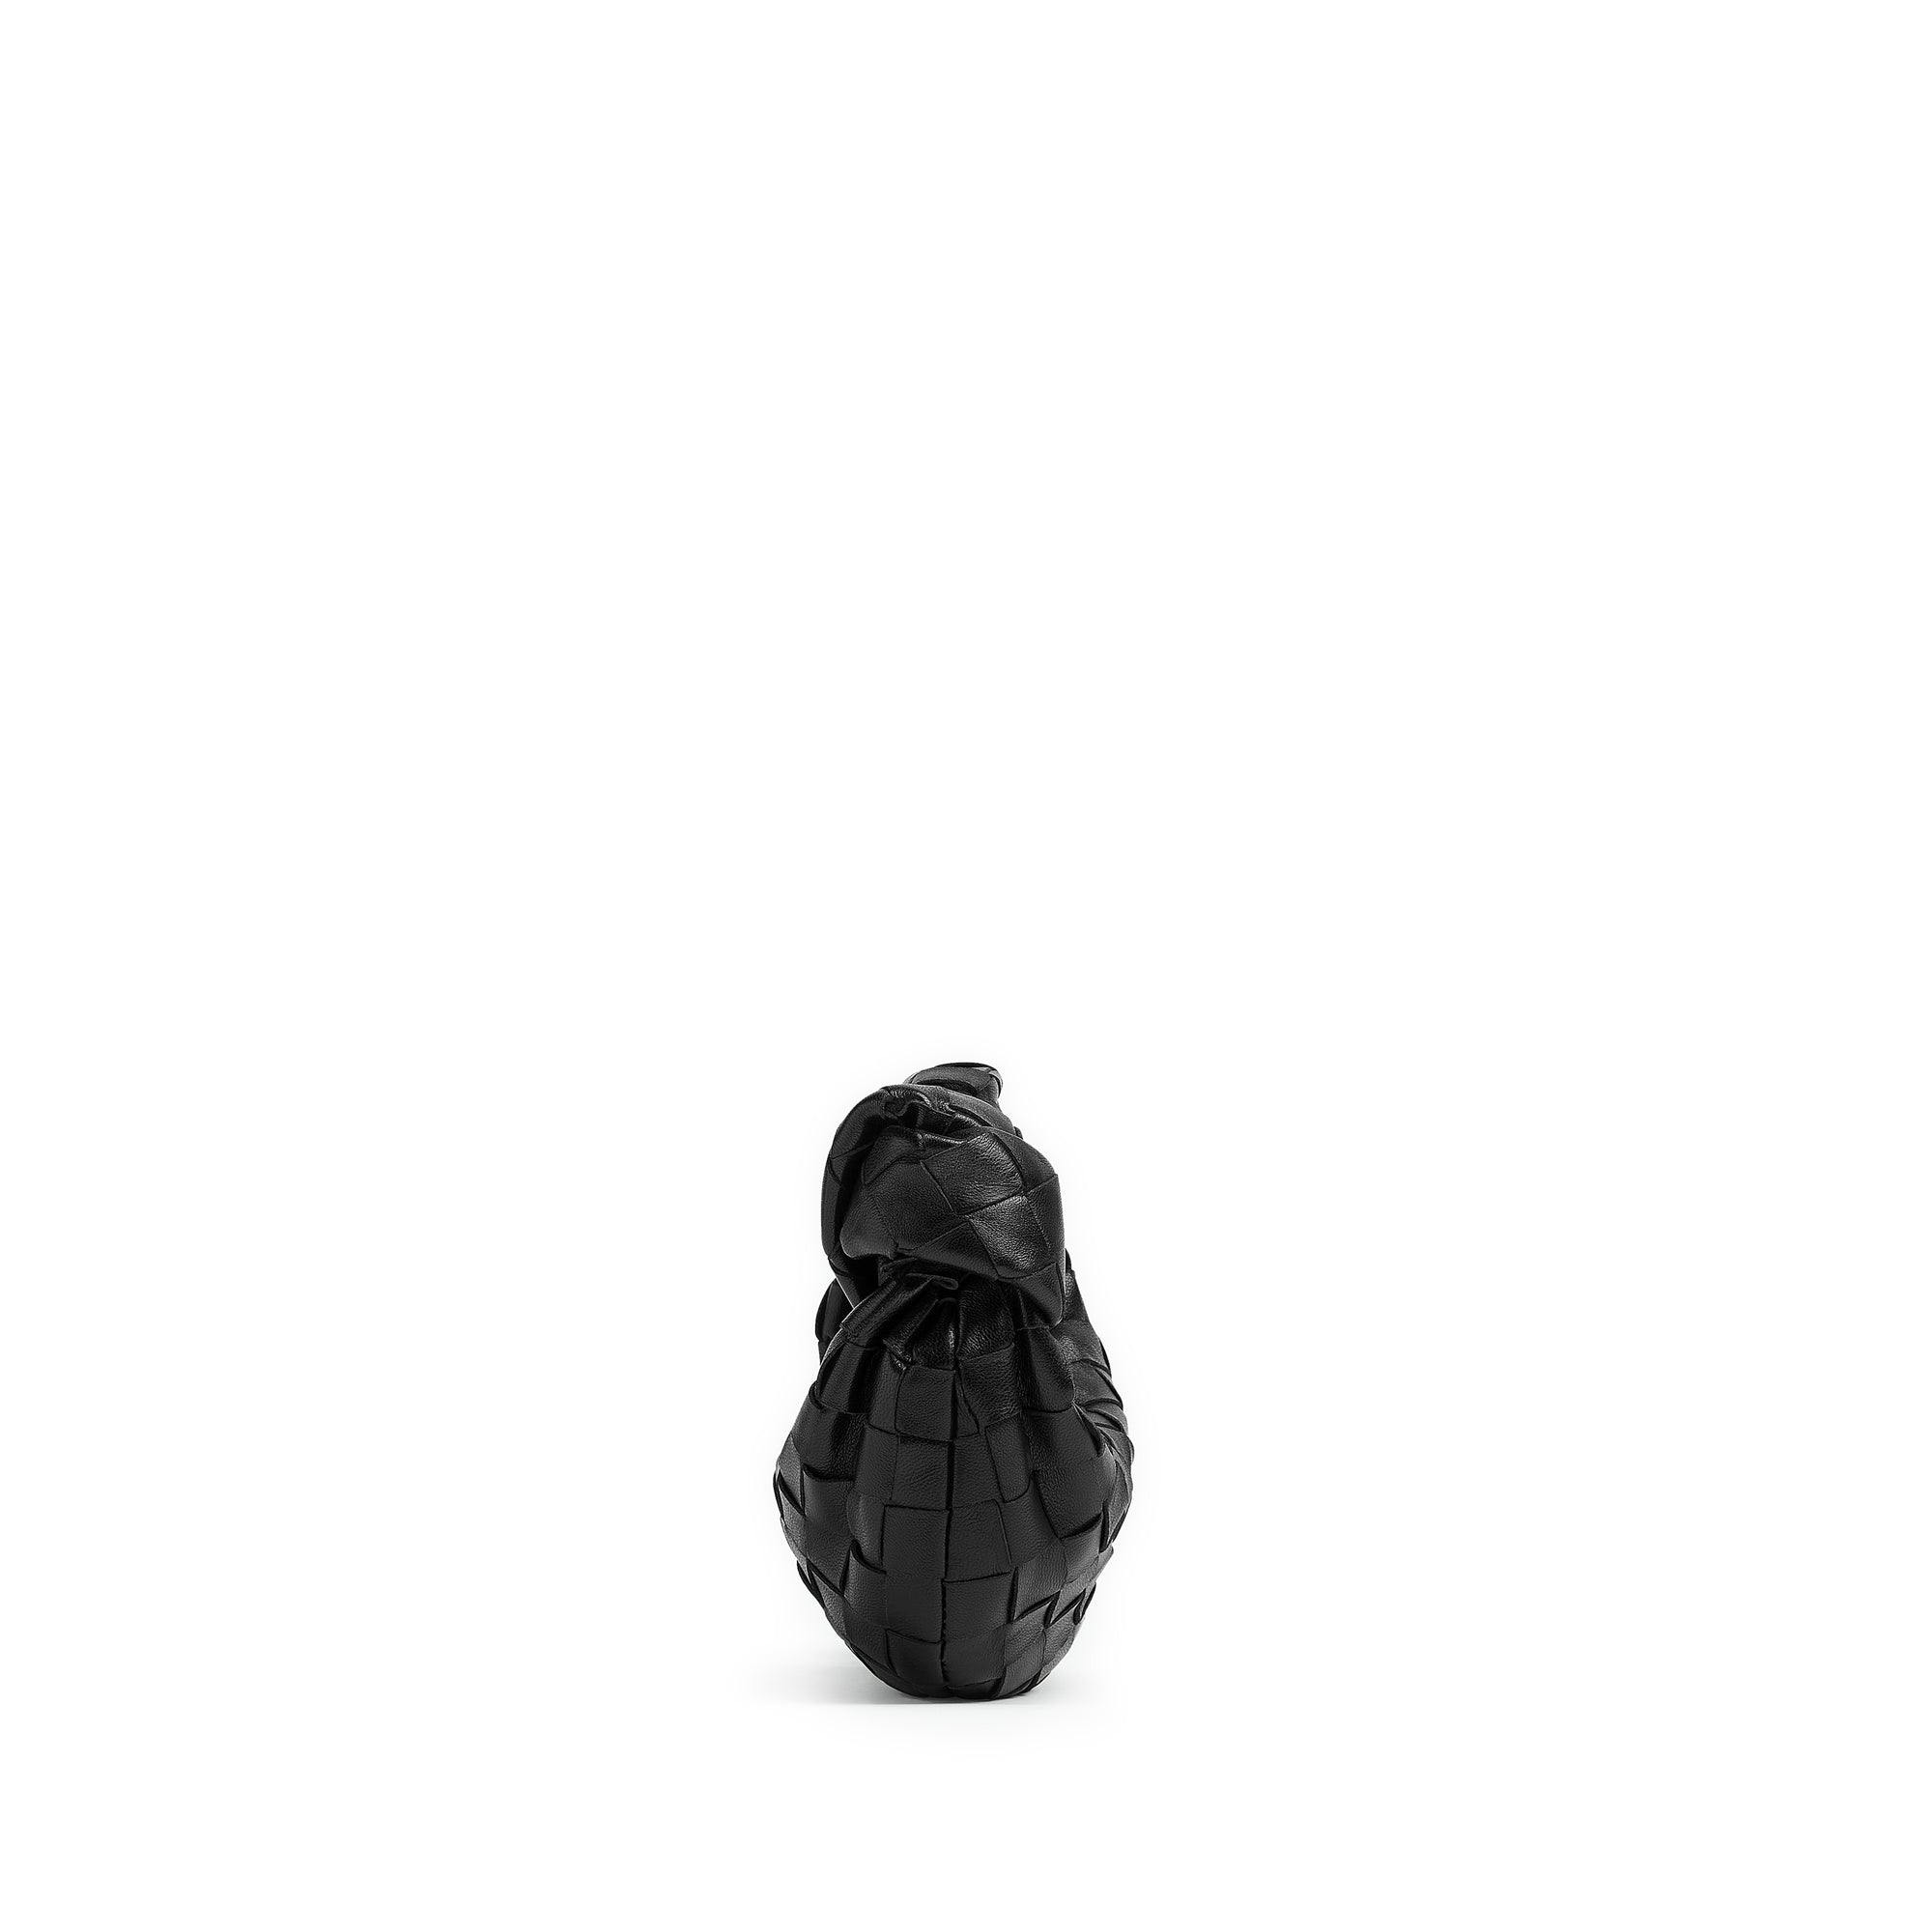 Bottega Veneta - Women’s Candy Jodie Bag - (Black/Silver) view 2